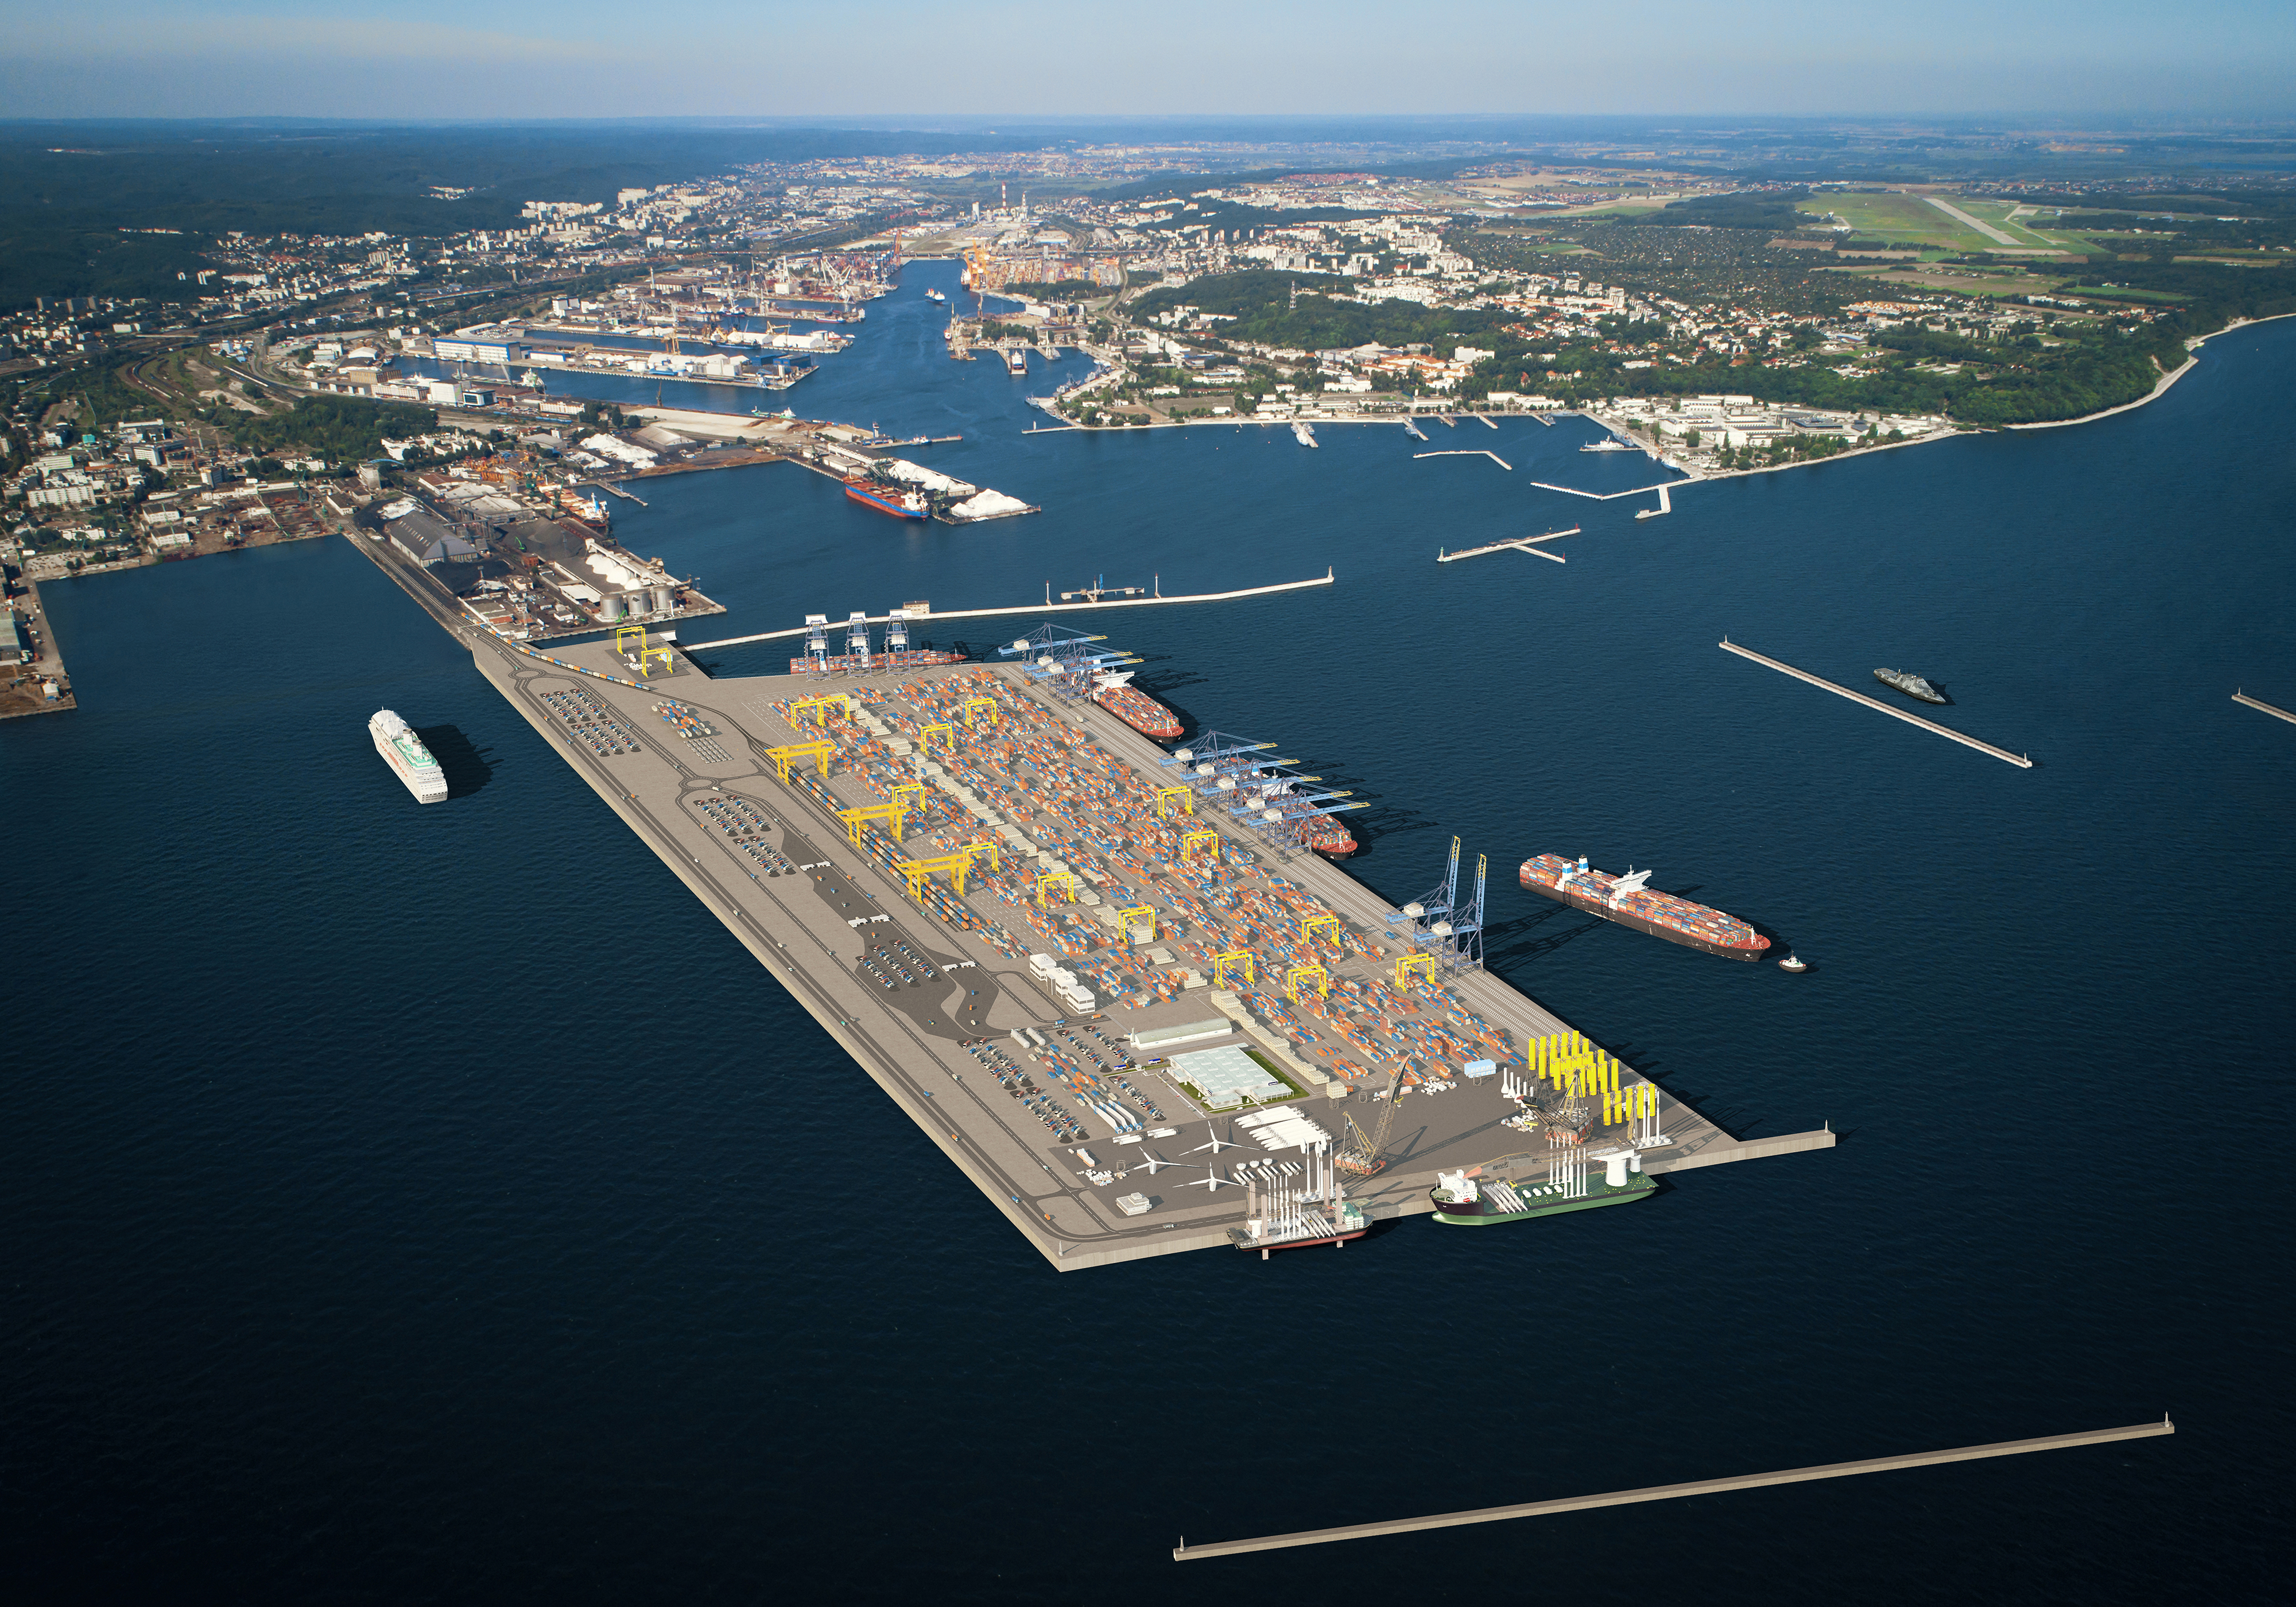 Wsparcie Rzadu W Planach Rozwojowych Portu Gdynia Portalmorski Pl